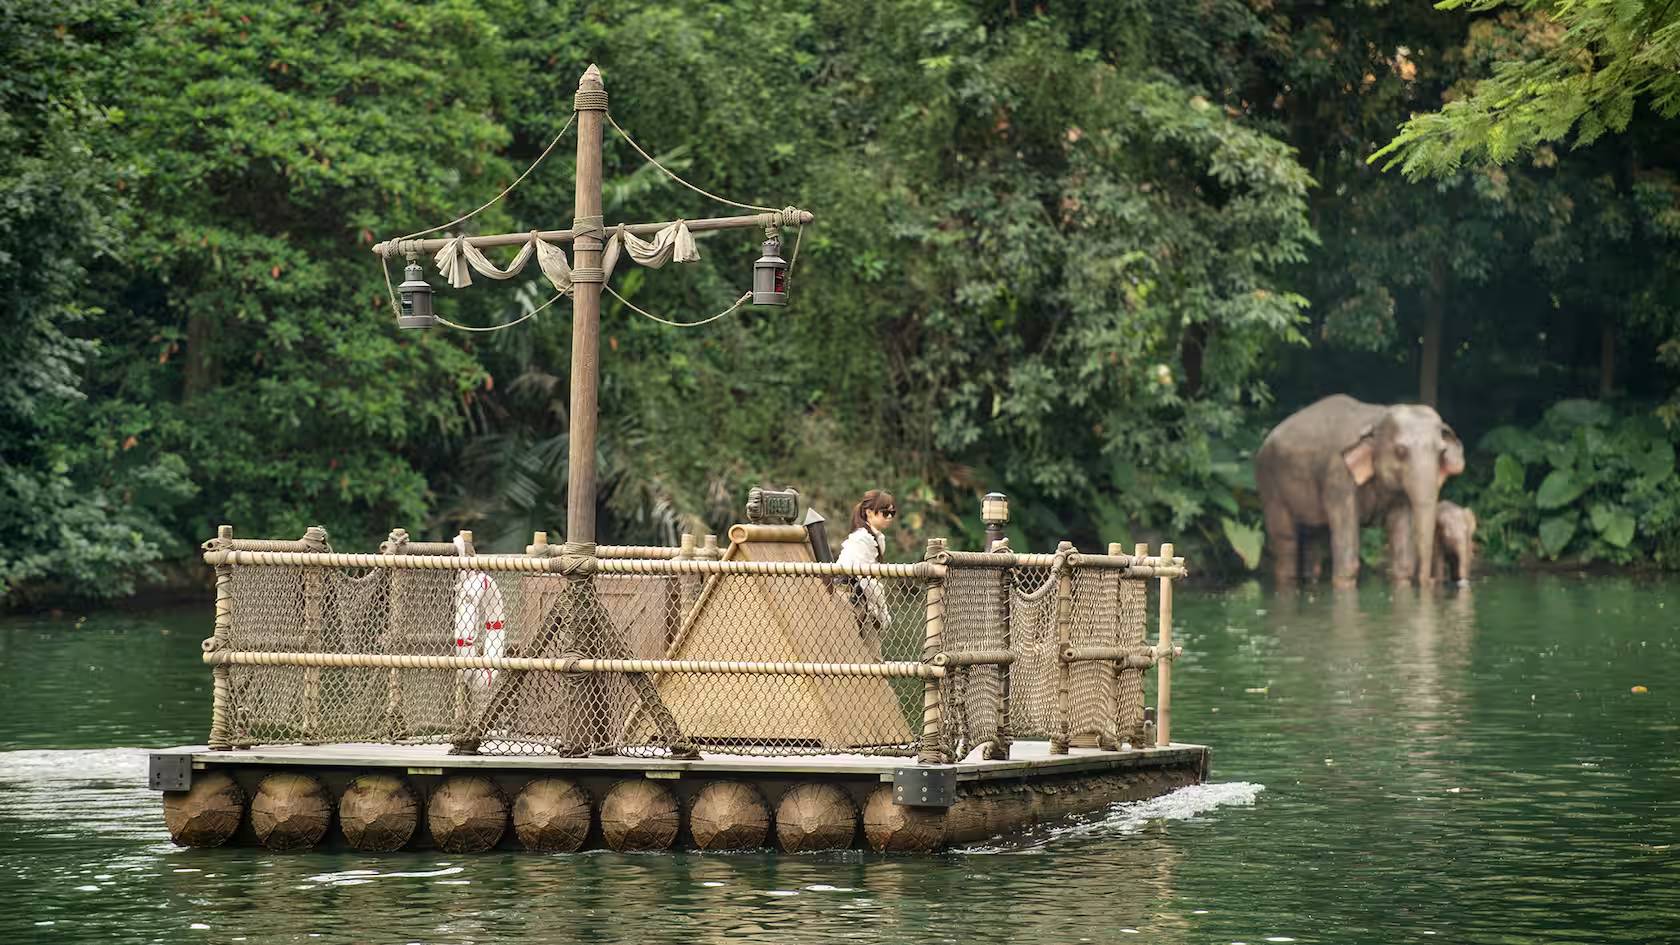 前往泰山树屋的木筏 / Rafts to Tarzan's Treehouse